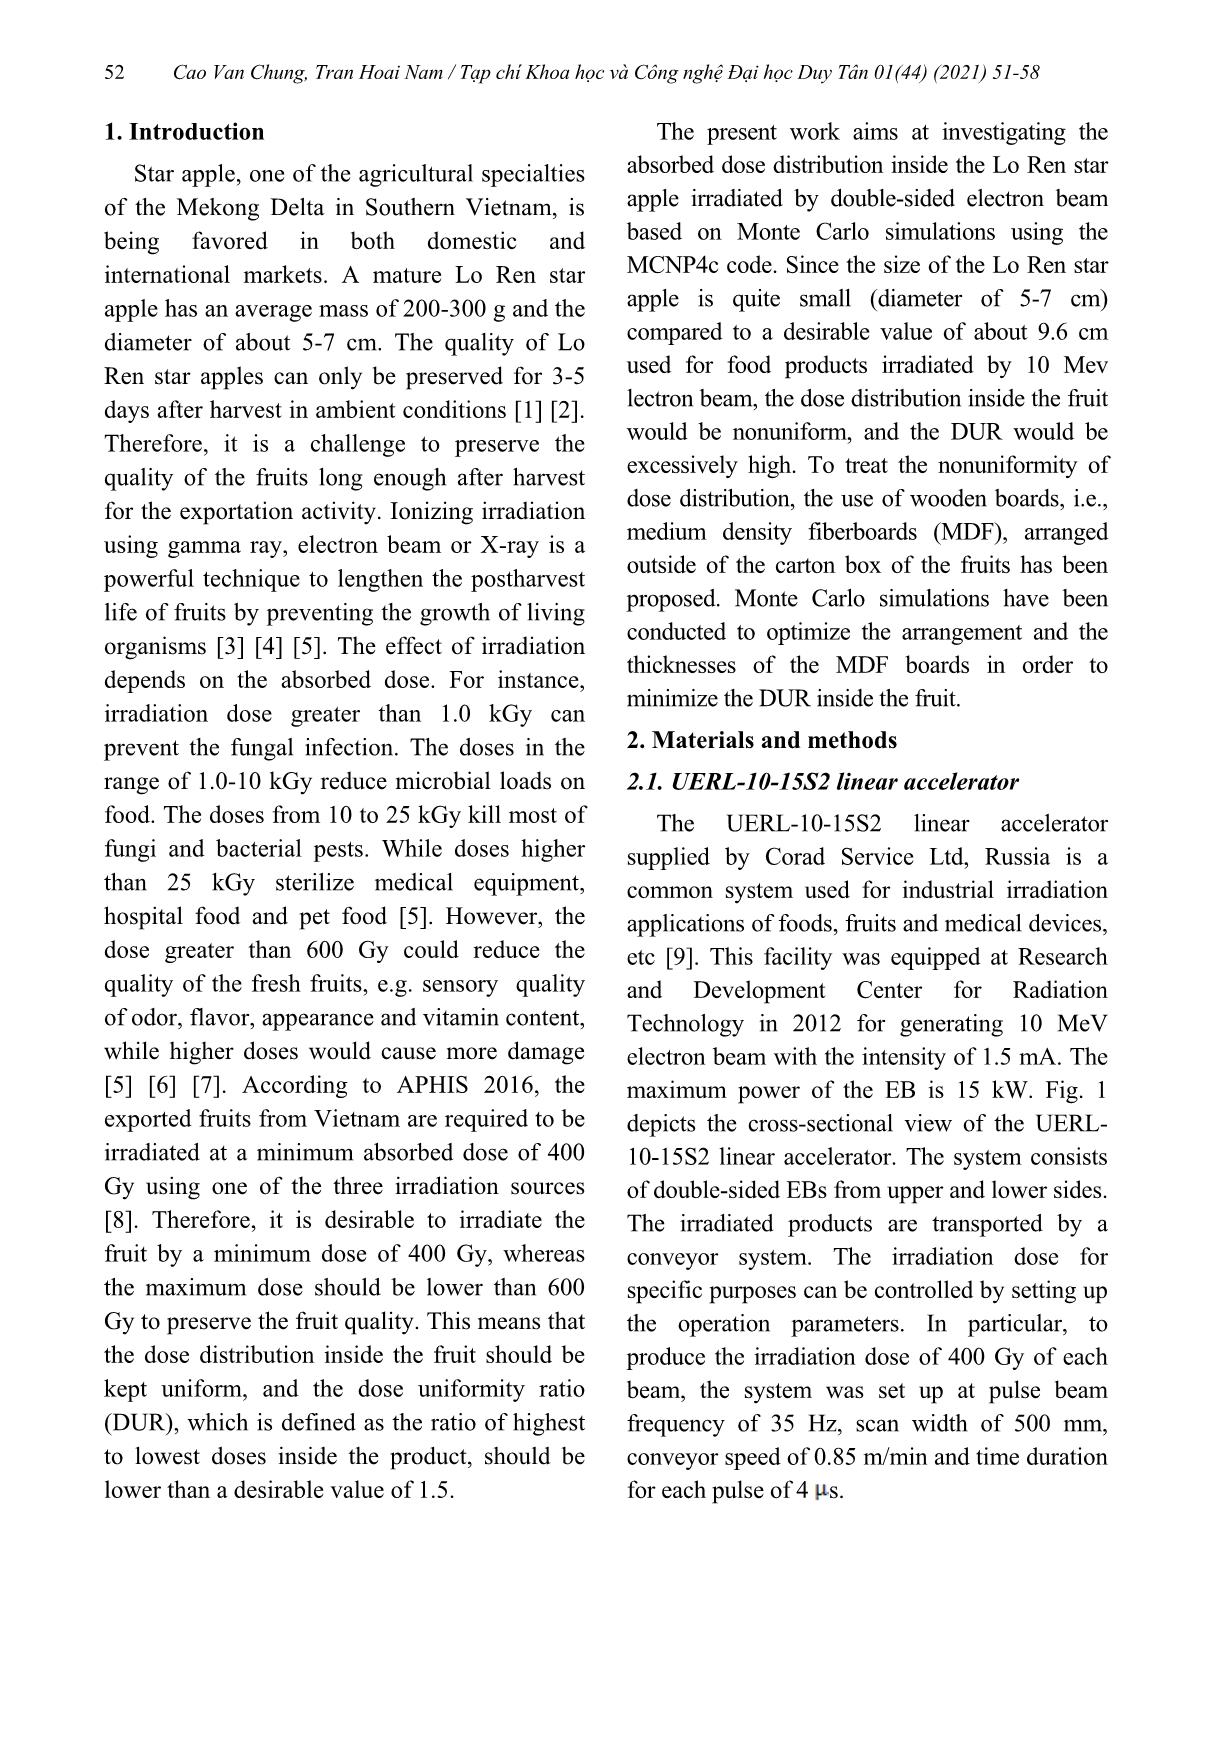 Khảo sát phân bố liều hấp thụ trong trái vú sữa chiếu xạ bởi chùm điện tử 10 MeV sử dụng mô phỏng Monte Carlo trang 2